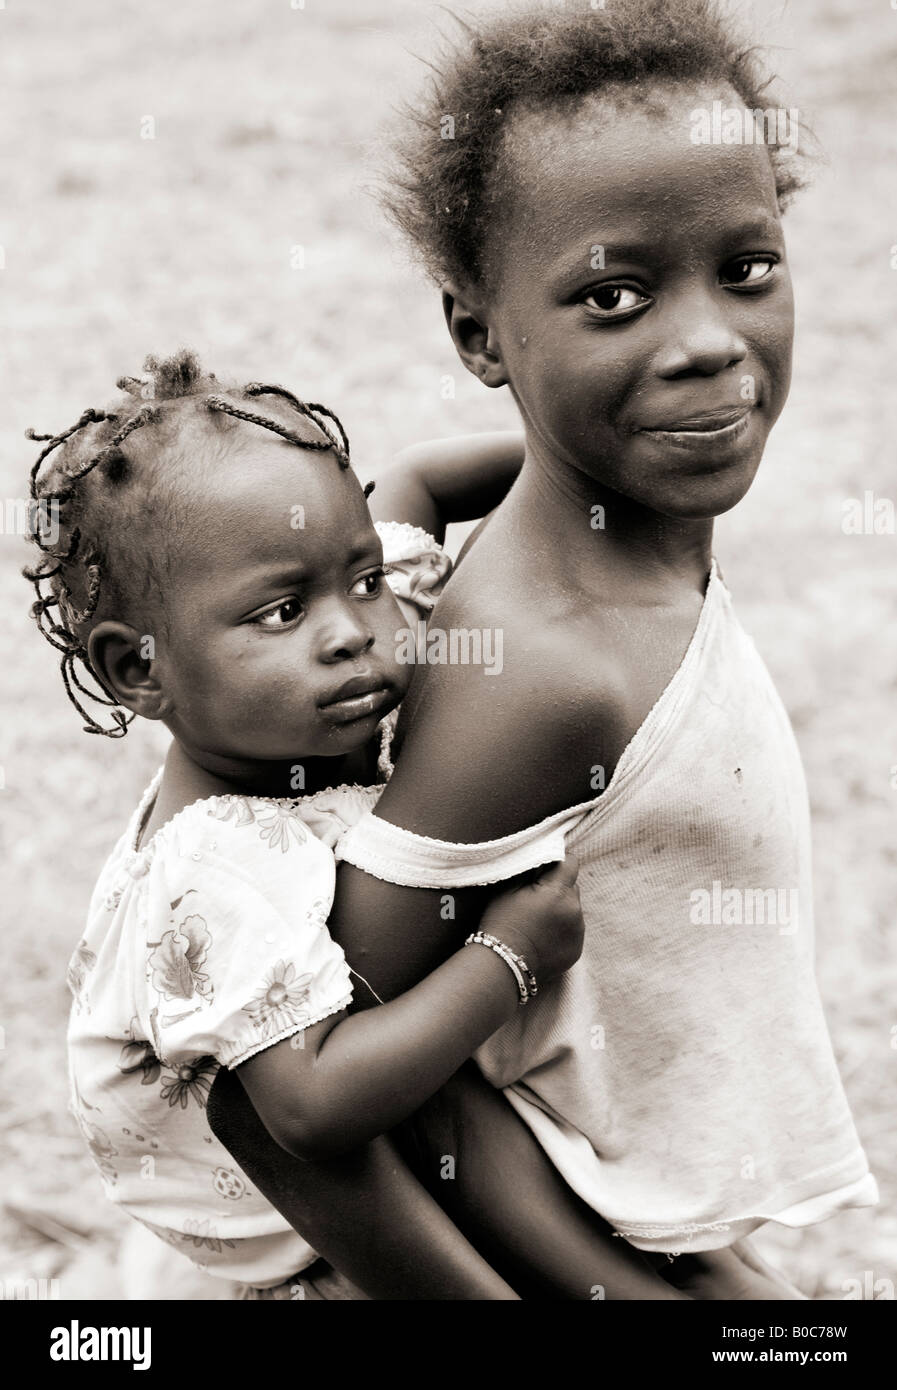 Schwarz und weiß, schwarz-weiß, Sepia getönten Foto von einem jungen gambischen afrikanische Mädchen tragen ihre Babyschwester Piggy-Back-Stil. Stockfoto